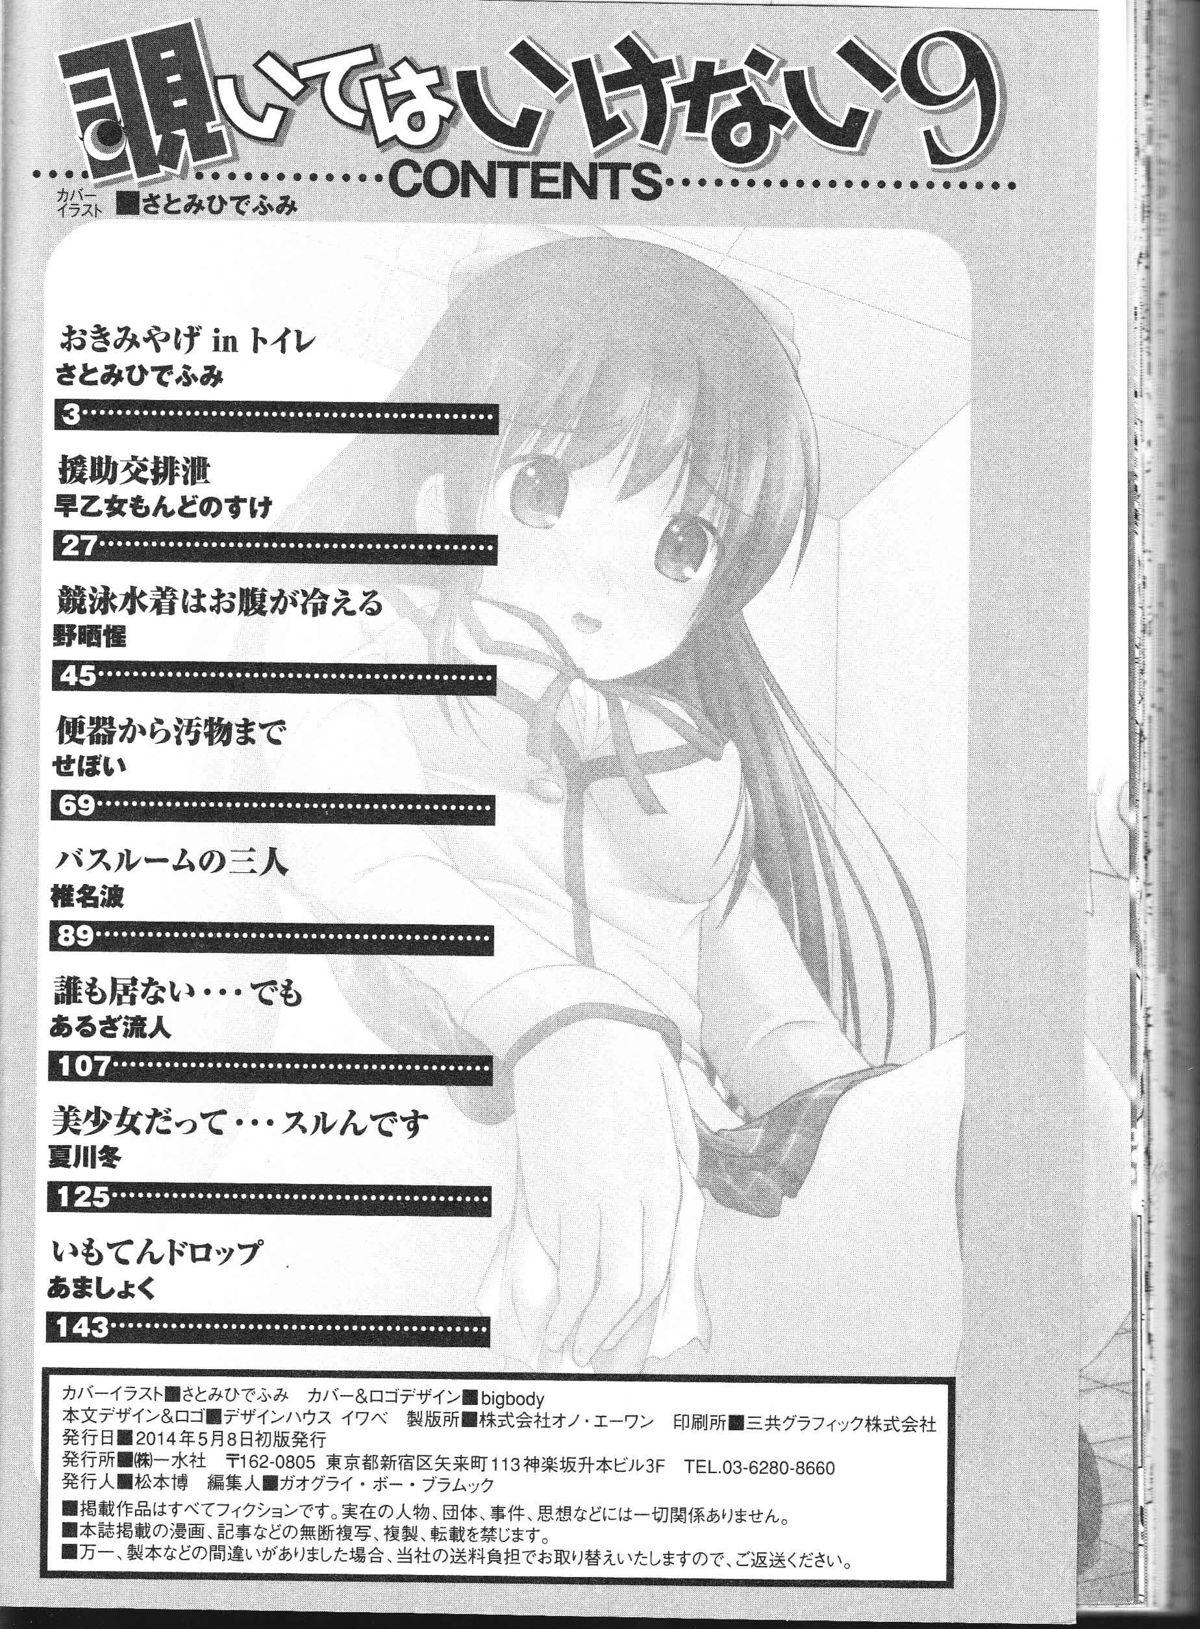 Ametuer Porn Nozoite wa Ikenai 9 - Do Not Peep! 9 Shaven - Page 163